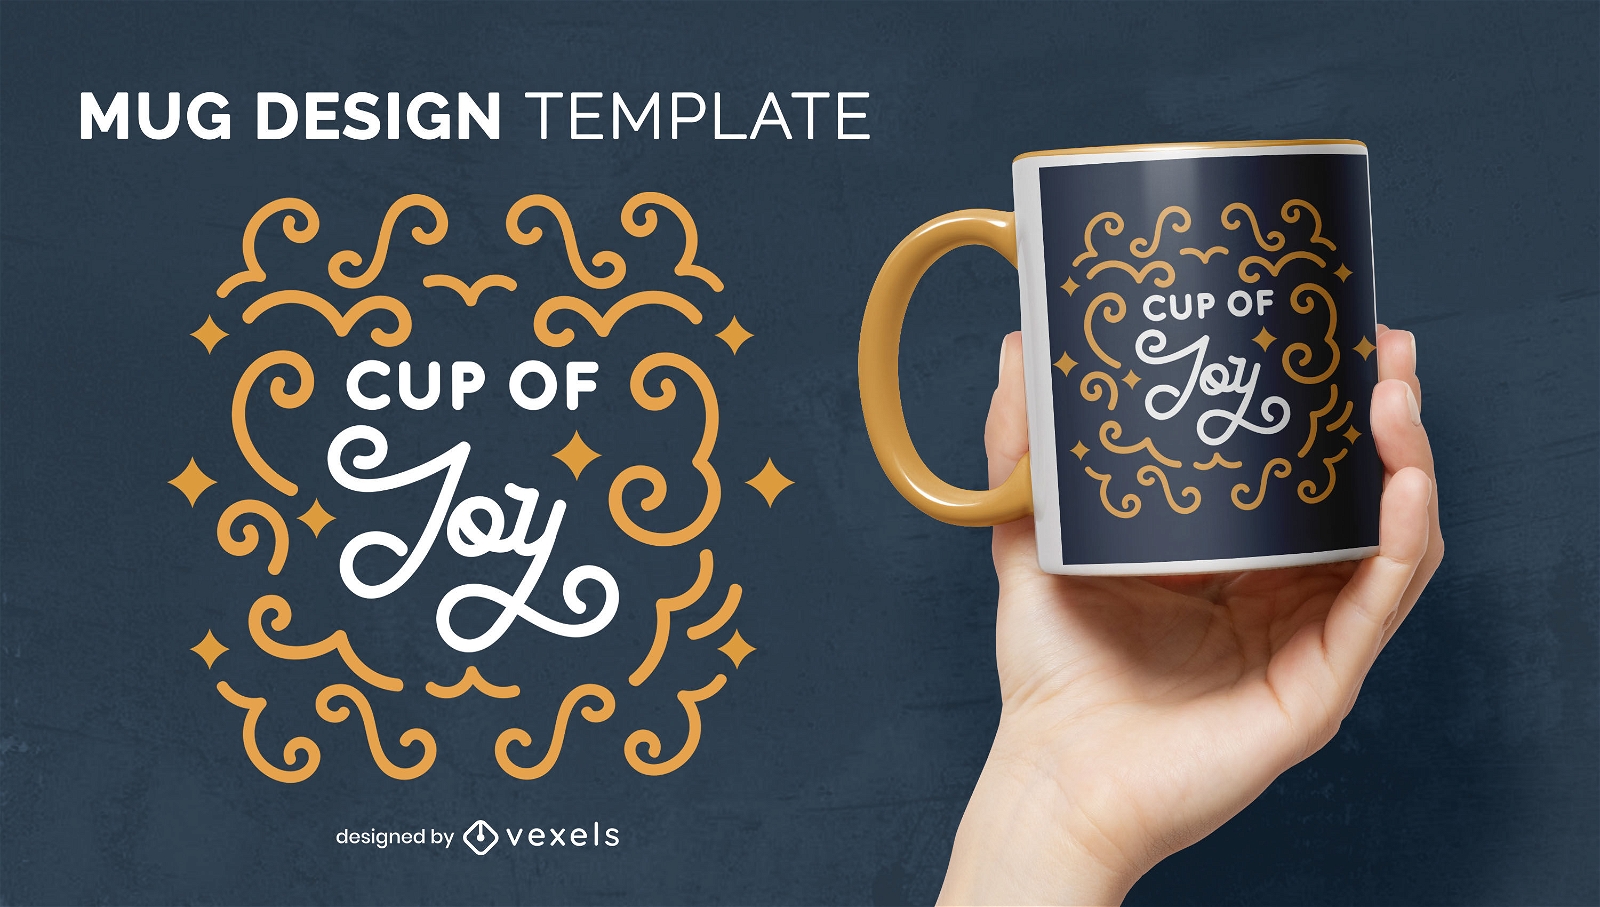 Cup of joy mug design